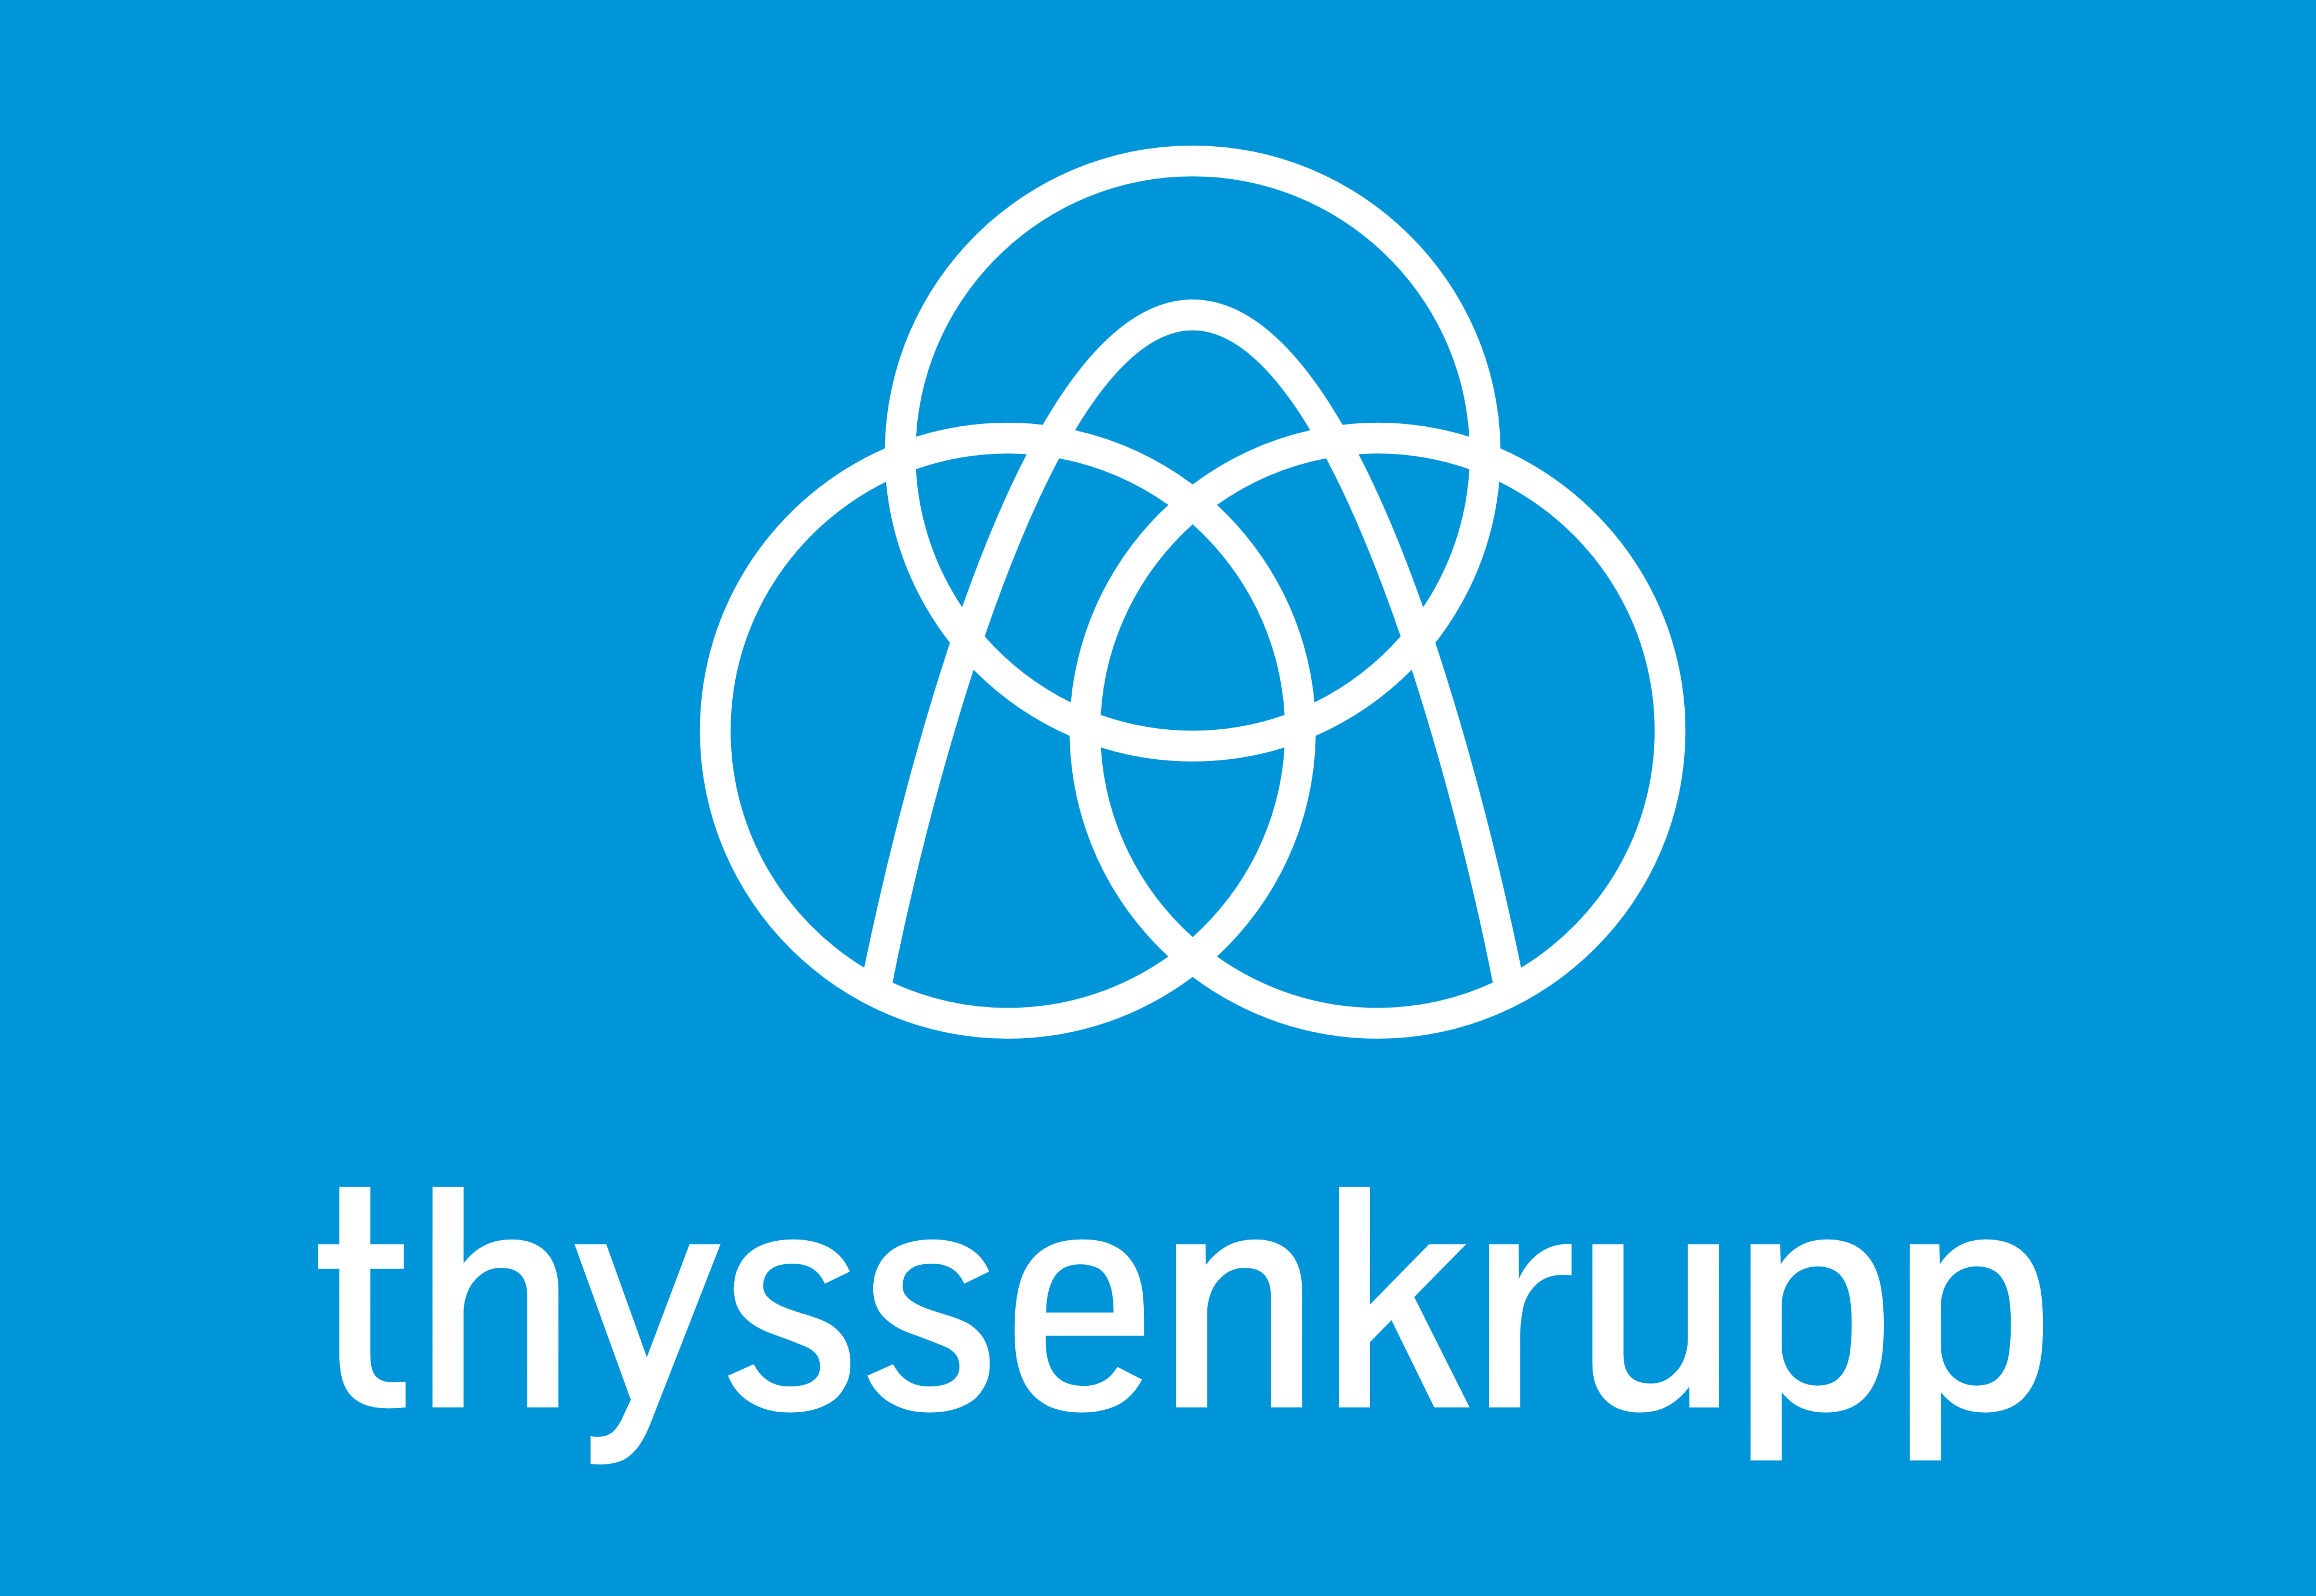 Thyssenkrupp_logo_blue